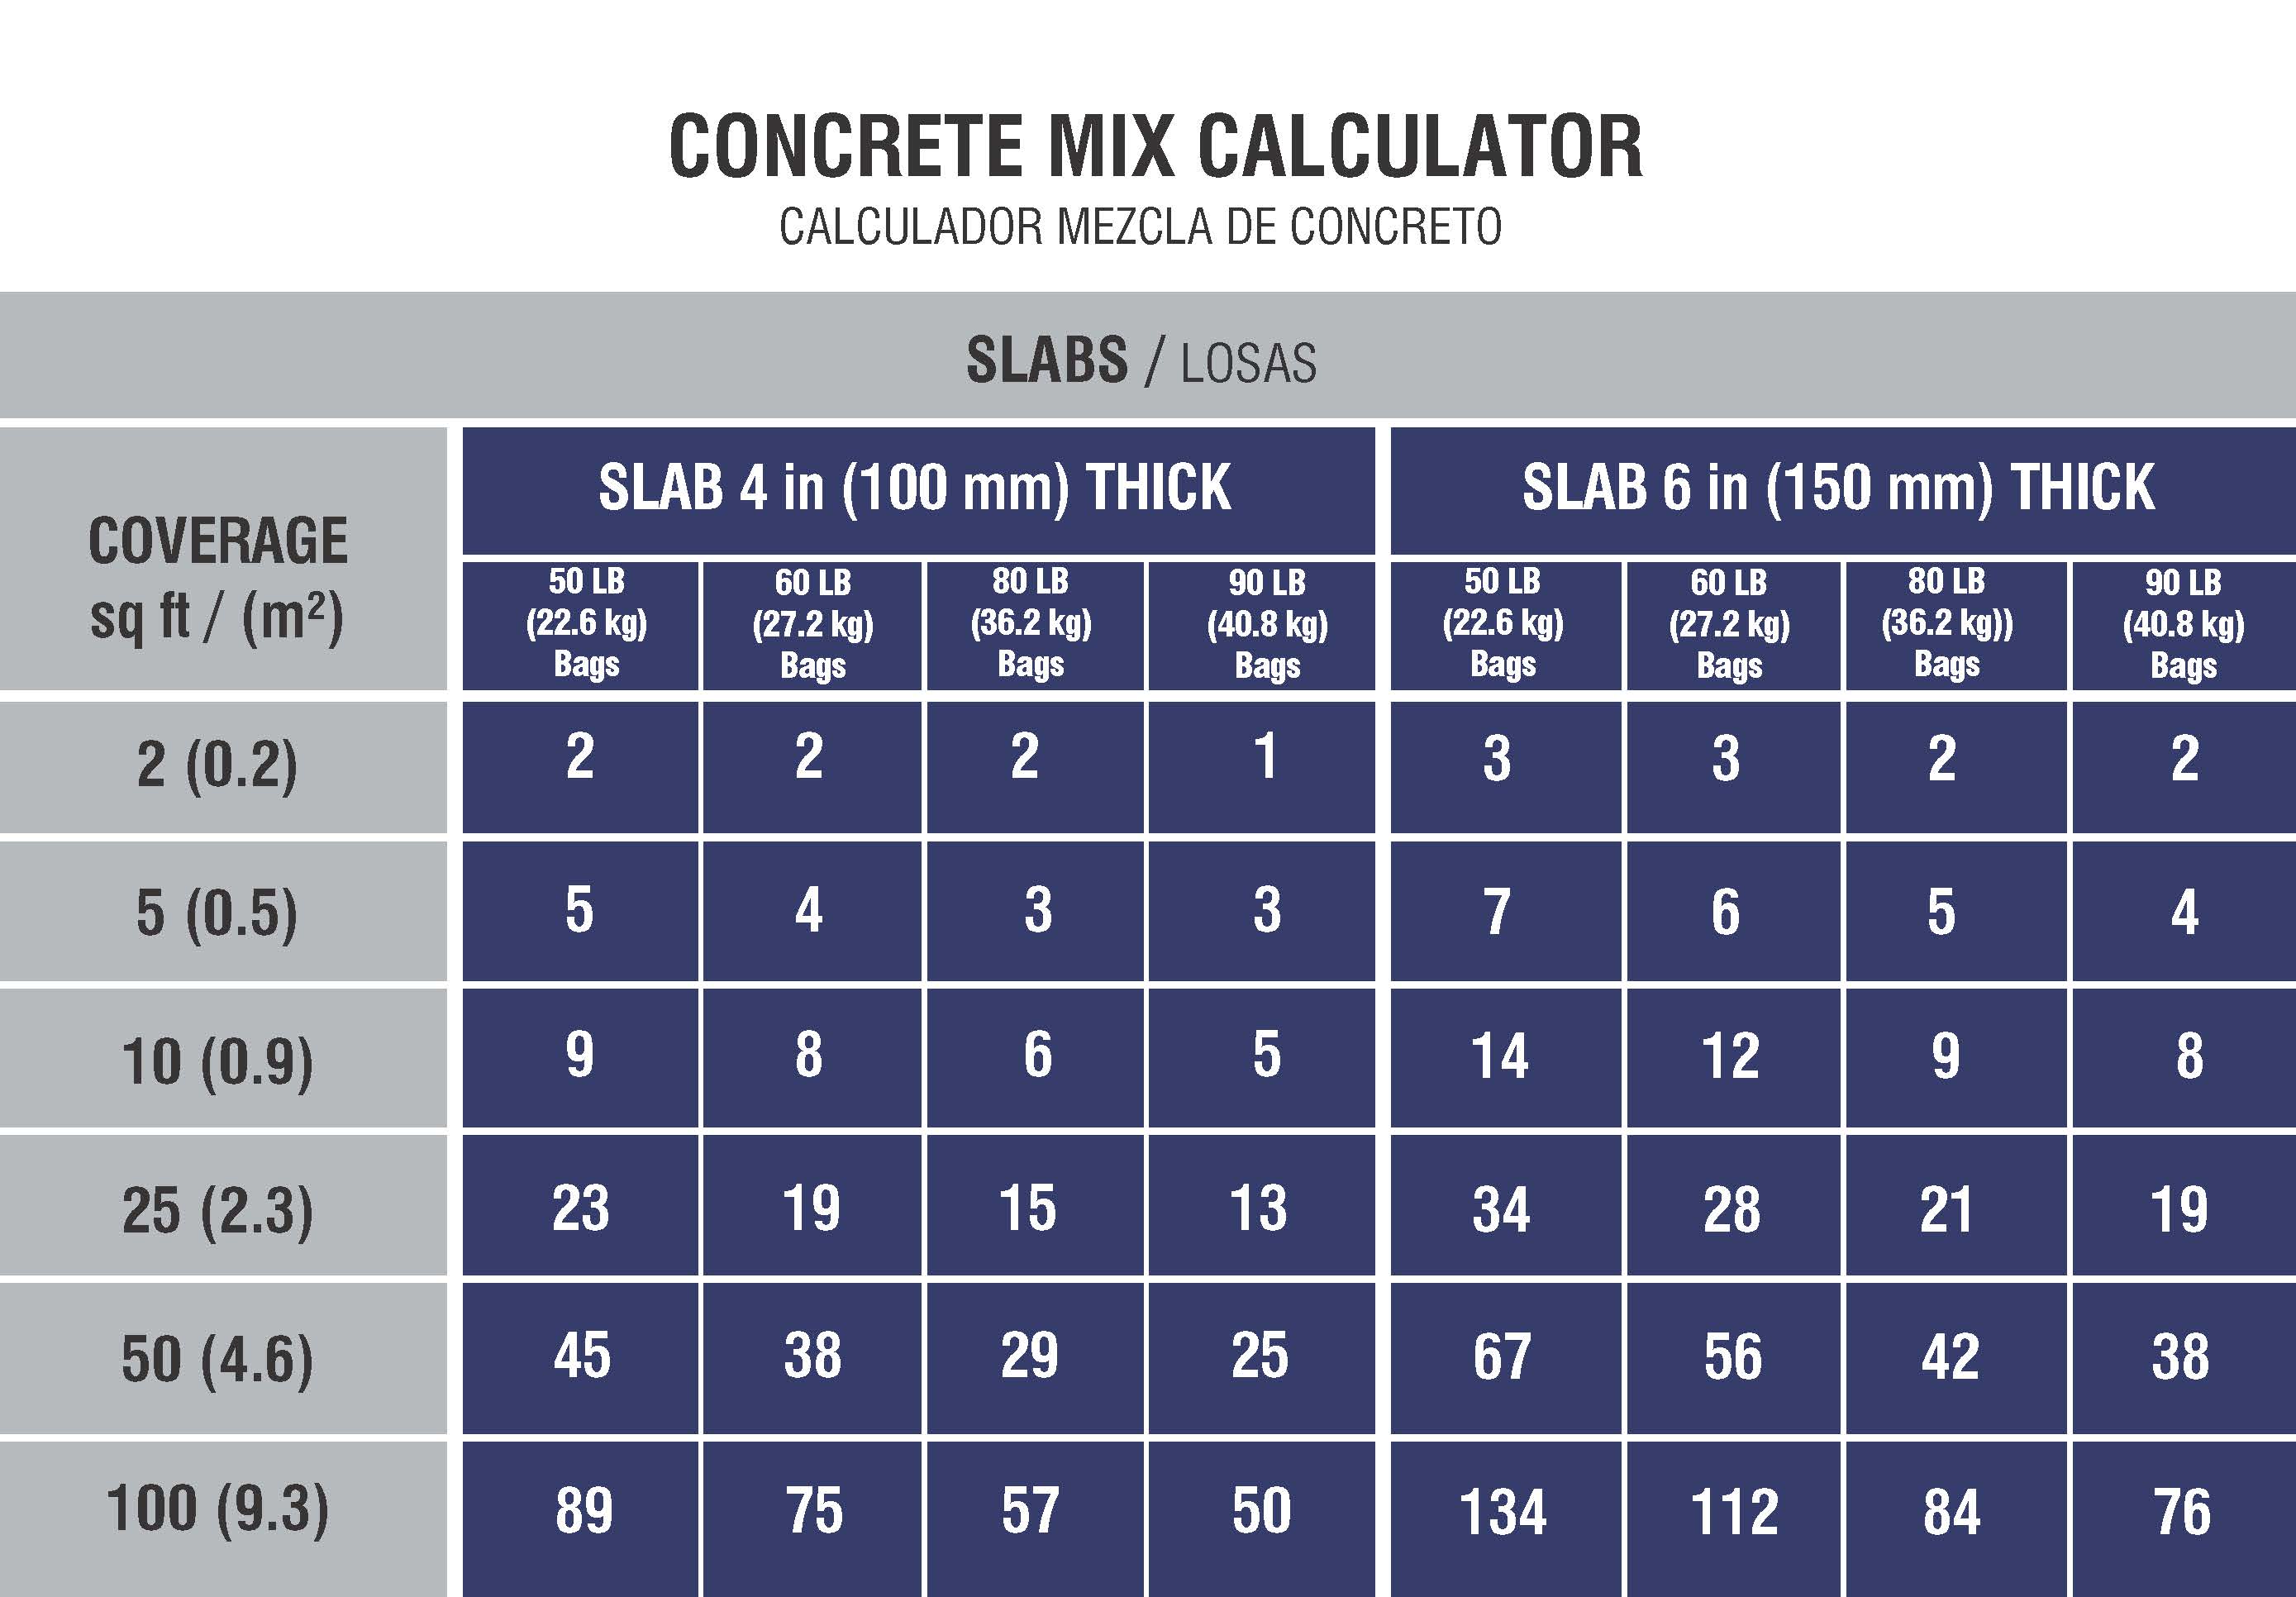 RAPID SET, Concrete Mix, 60 lb Container Size, Concrete Mix -  15F527